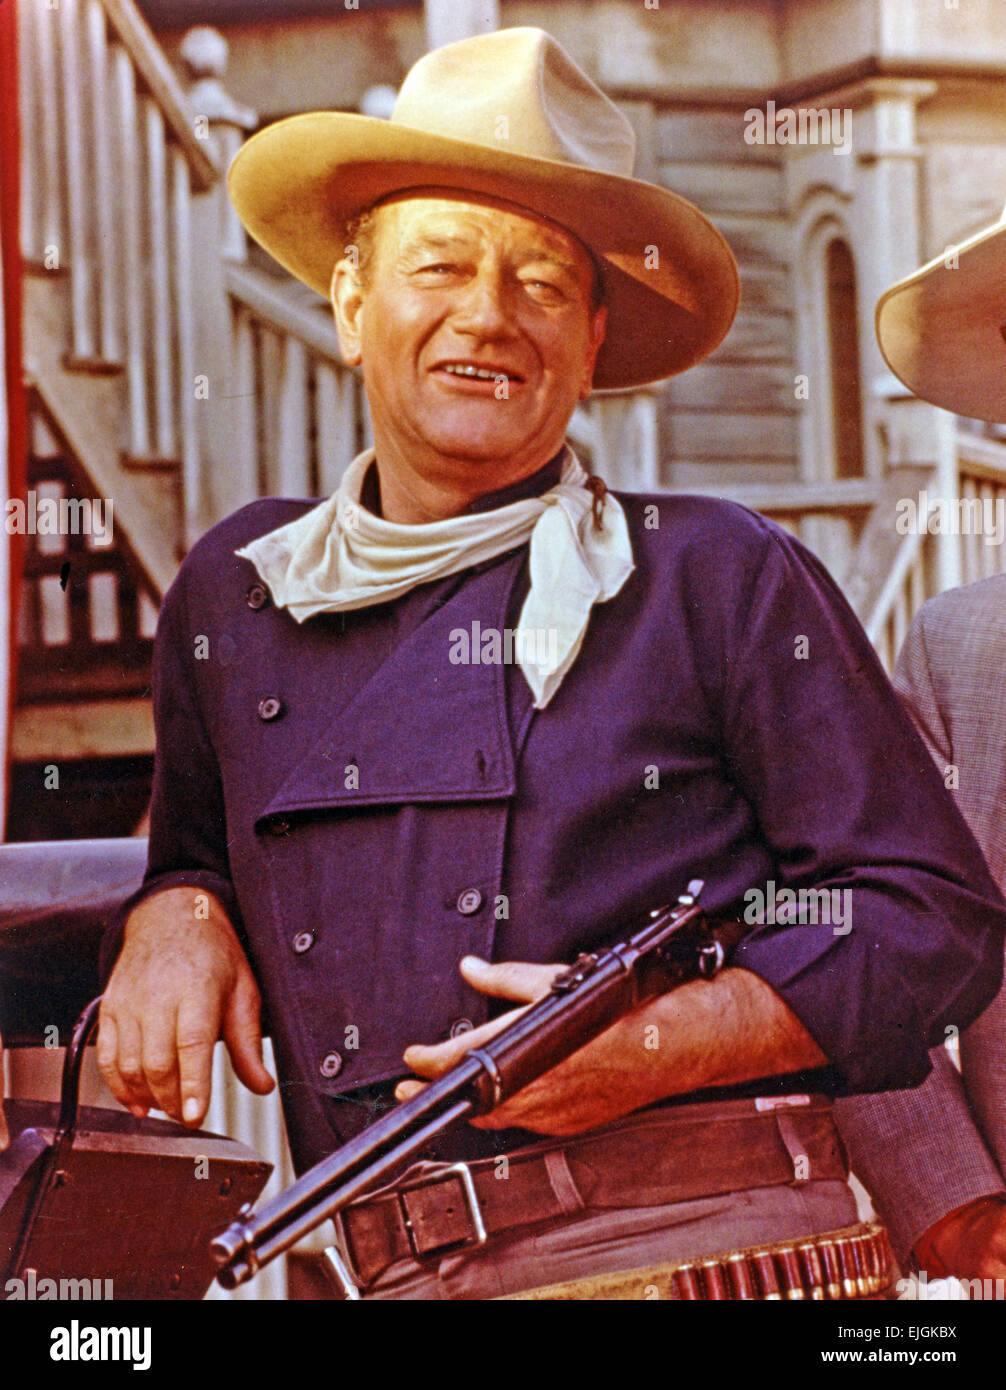 JOHN WAYNE (1907-1979) pellicola US attore famoso per i suoi ruoli in film western, circa 1968 Foto Stock